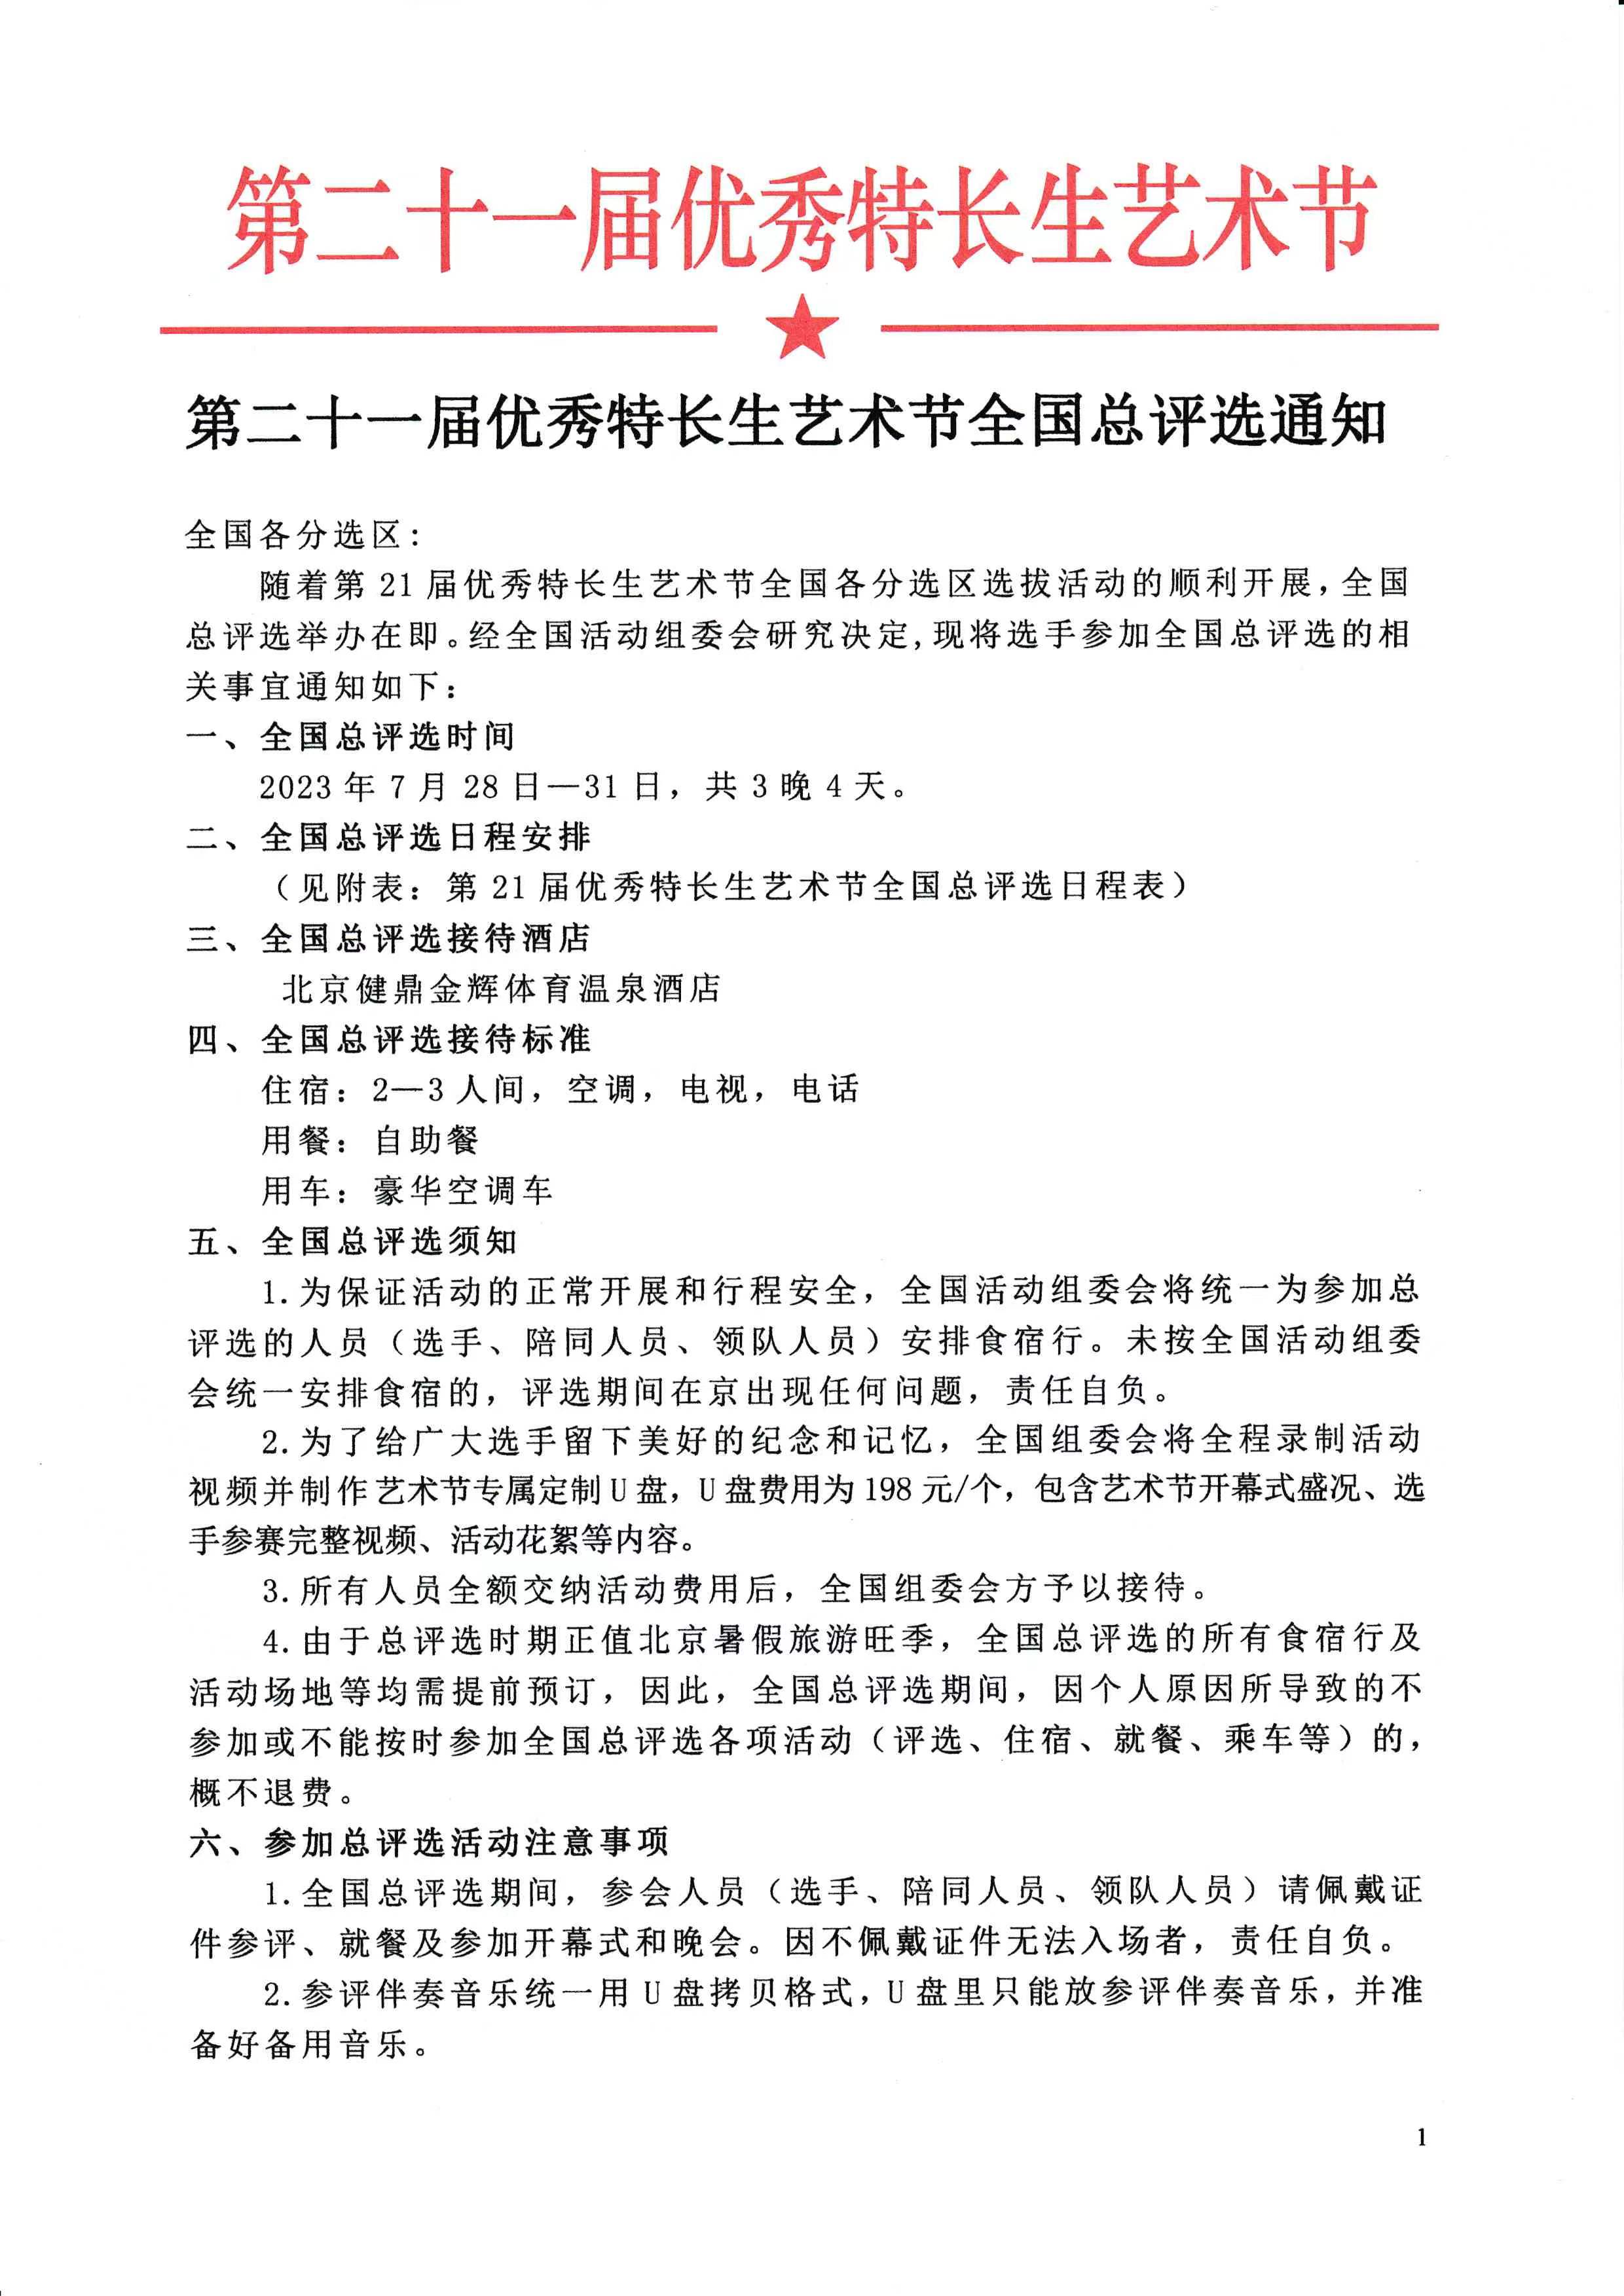 北京文件1.jpg